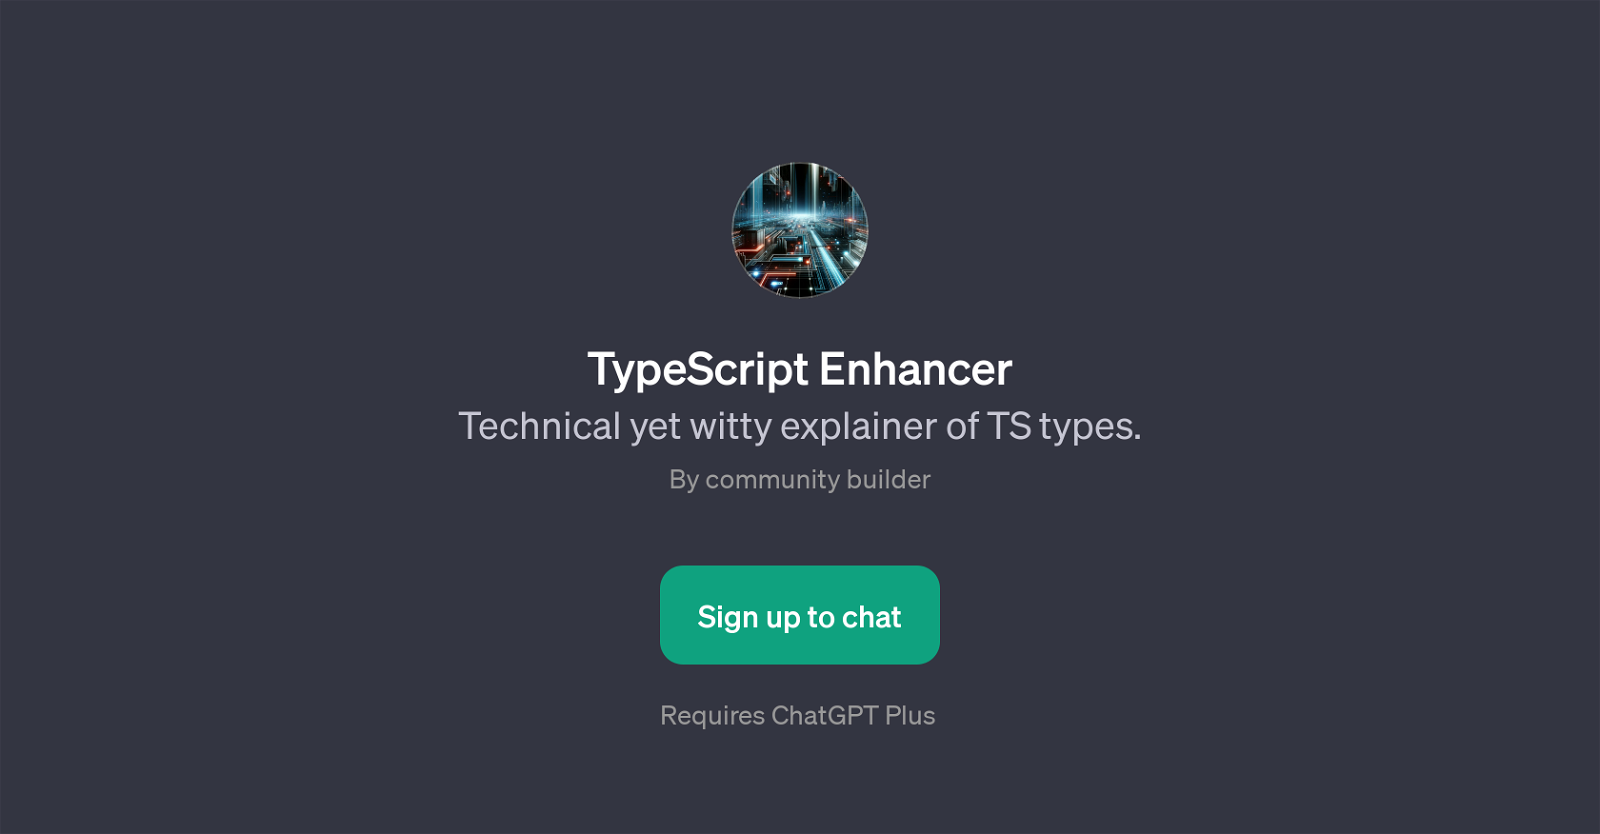 TypeScript Enhancer website